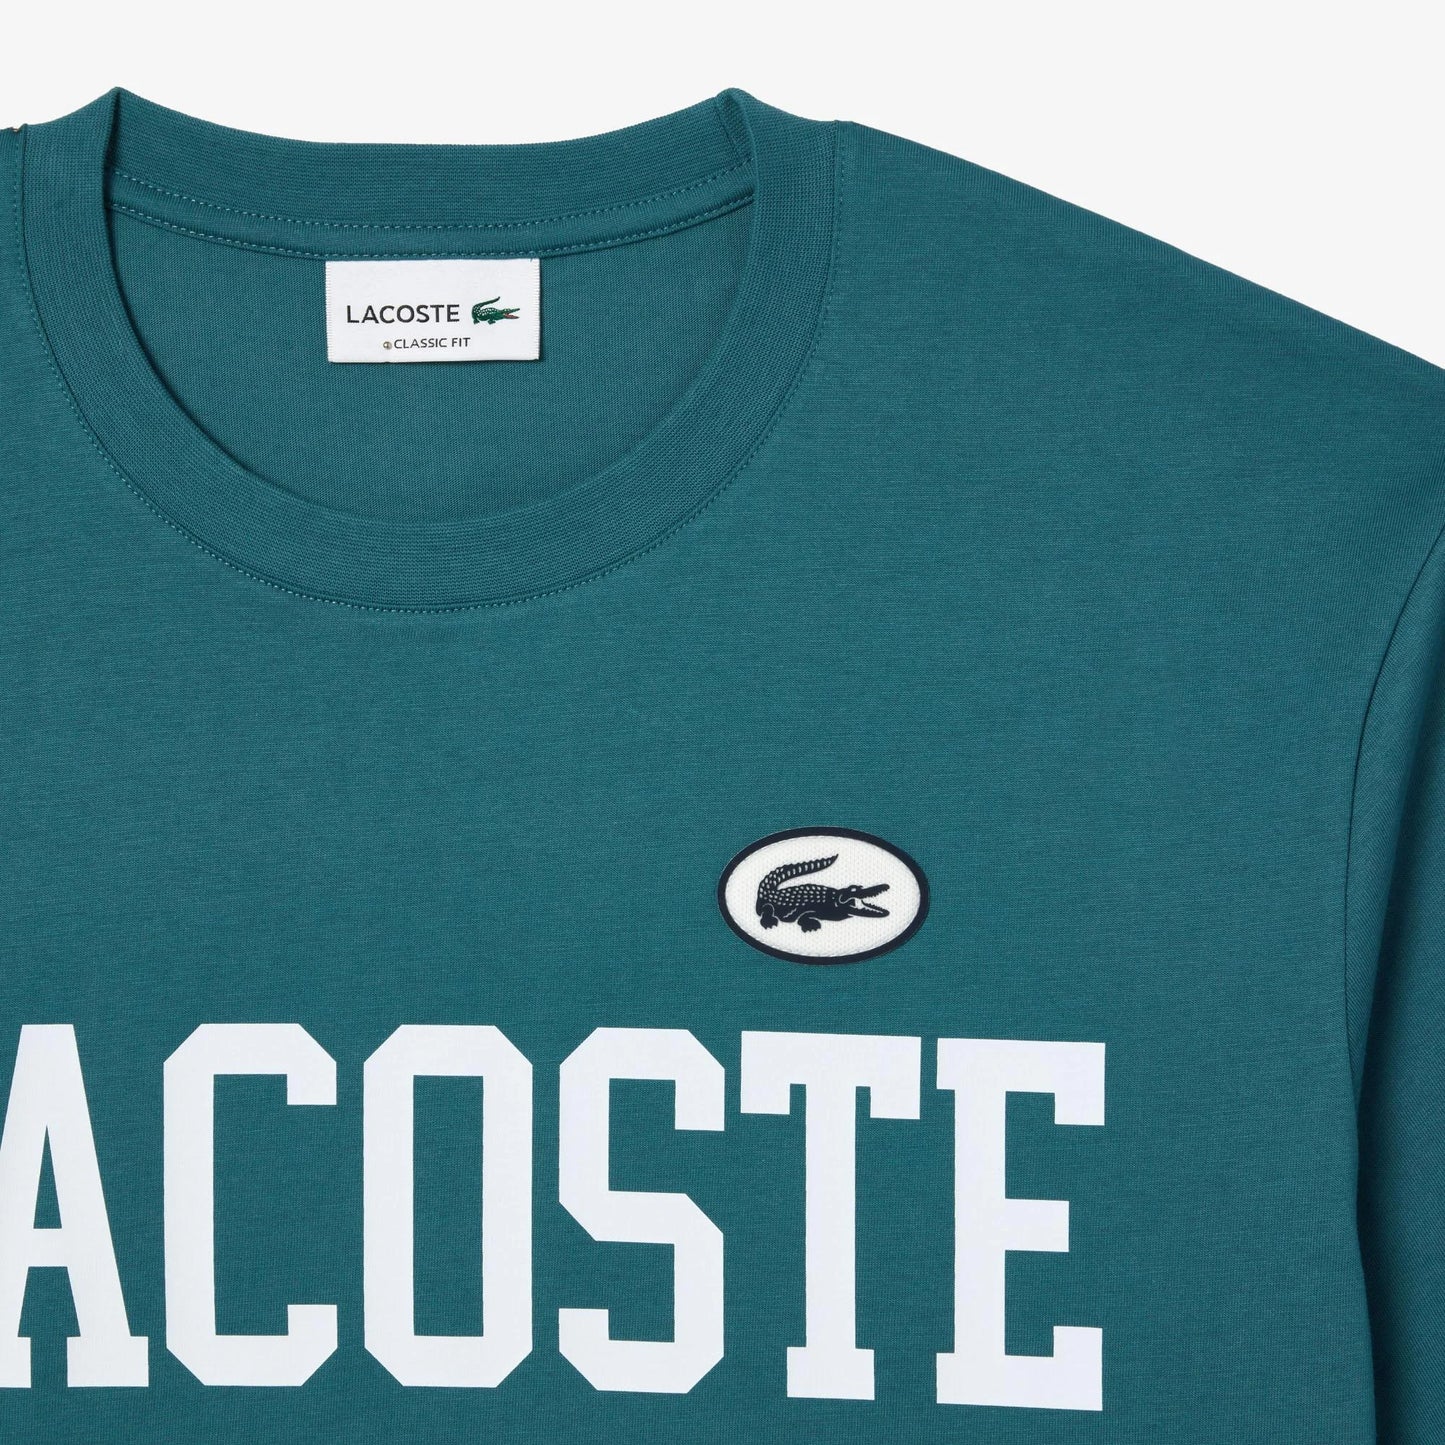 LACOSTE Men's Cotton Contrast Print & Badge T-shirt - Turquoise